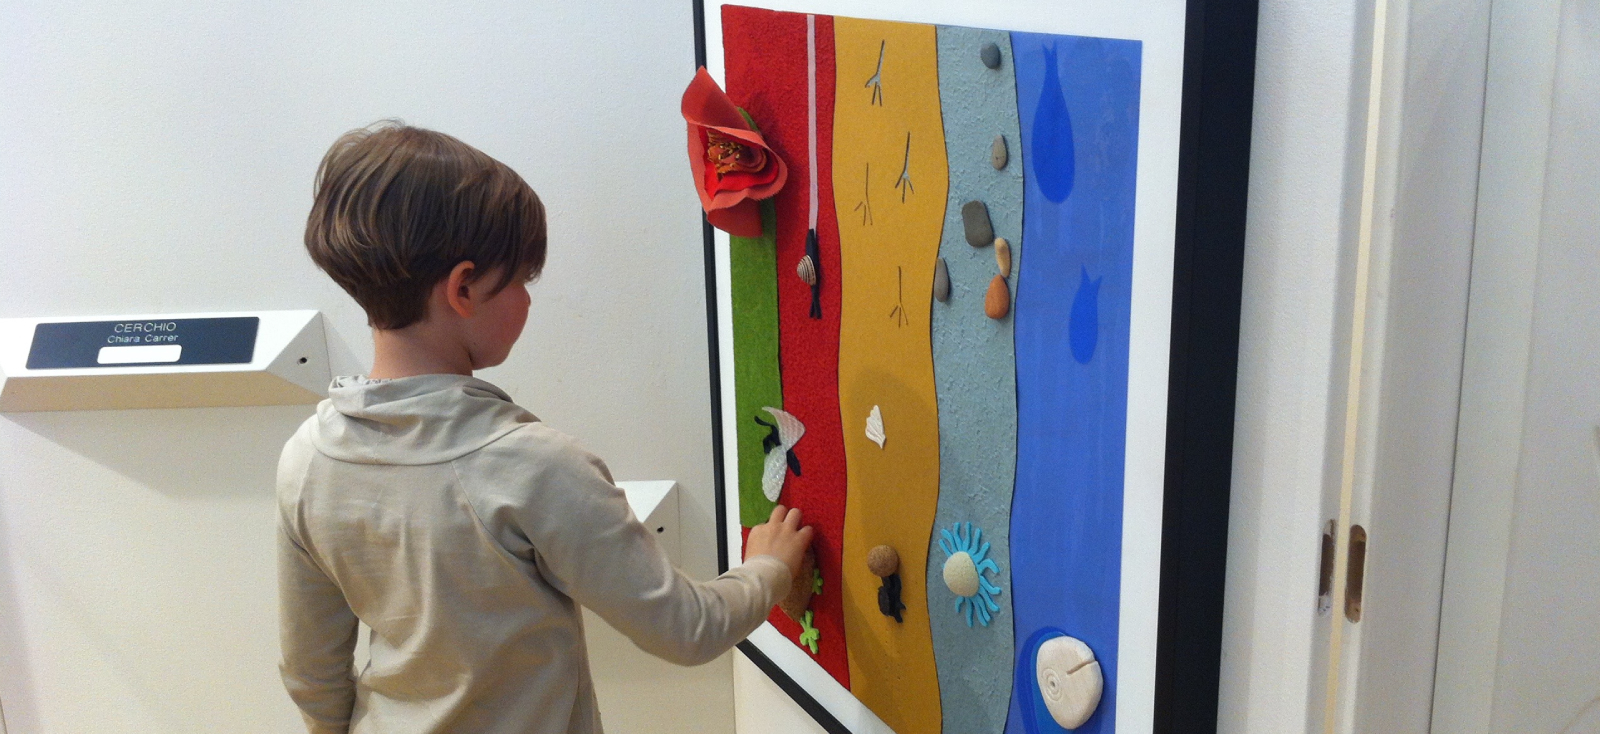 Bambina ipovedente visita mostra dipinti tattili, progetto A spasso con le dita - Enelcuore.it